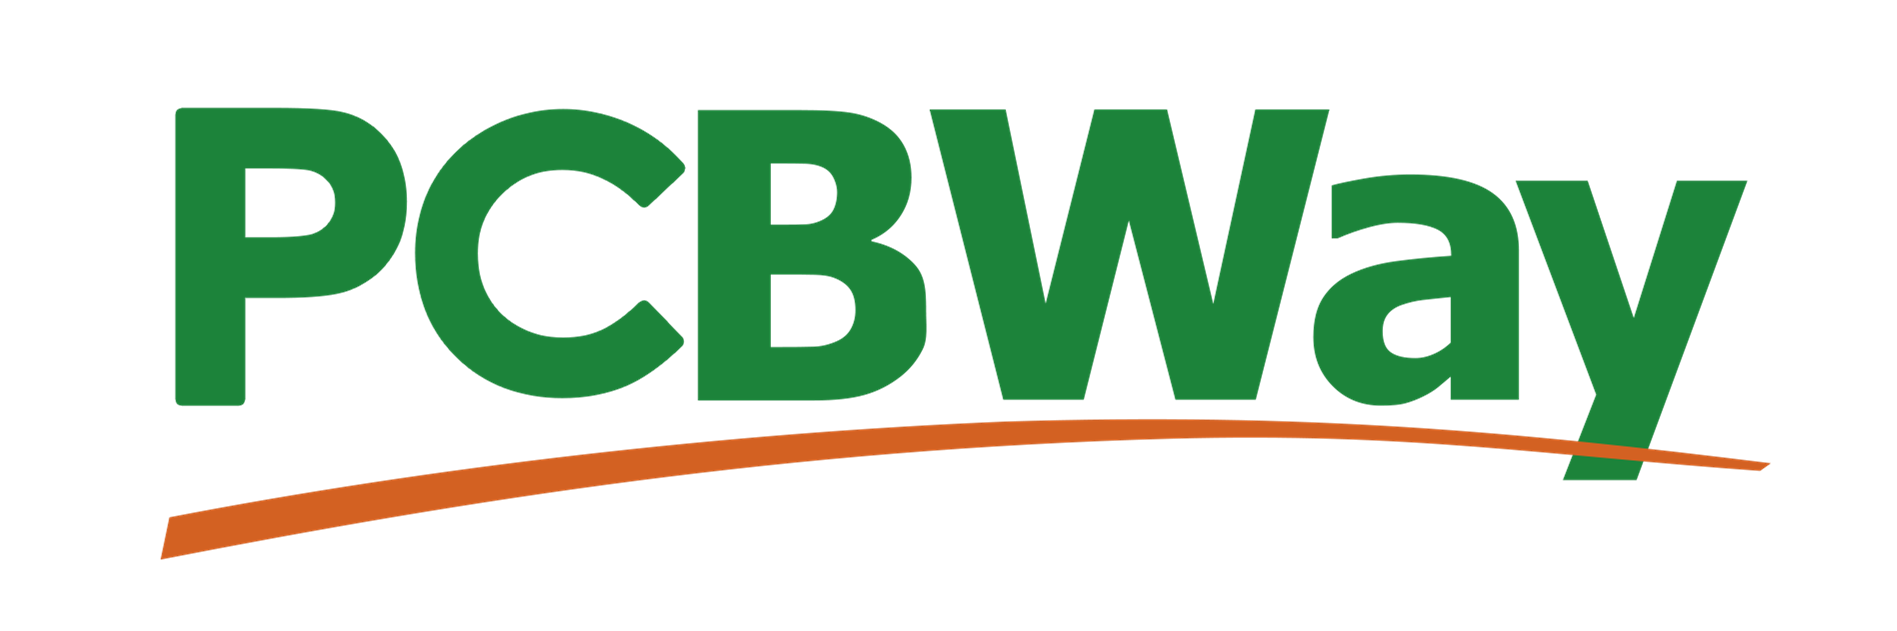 pcbway logo